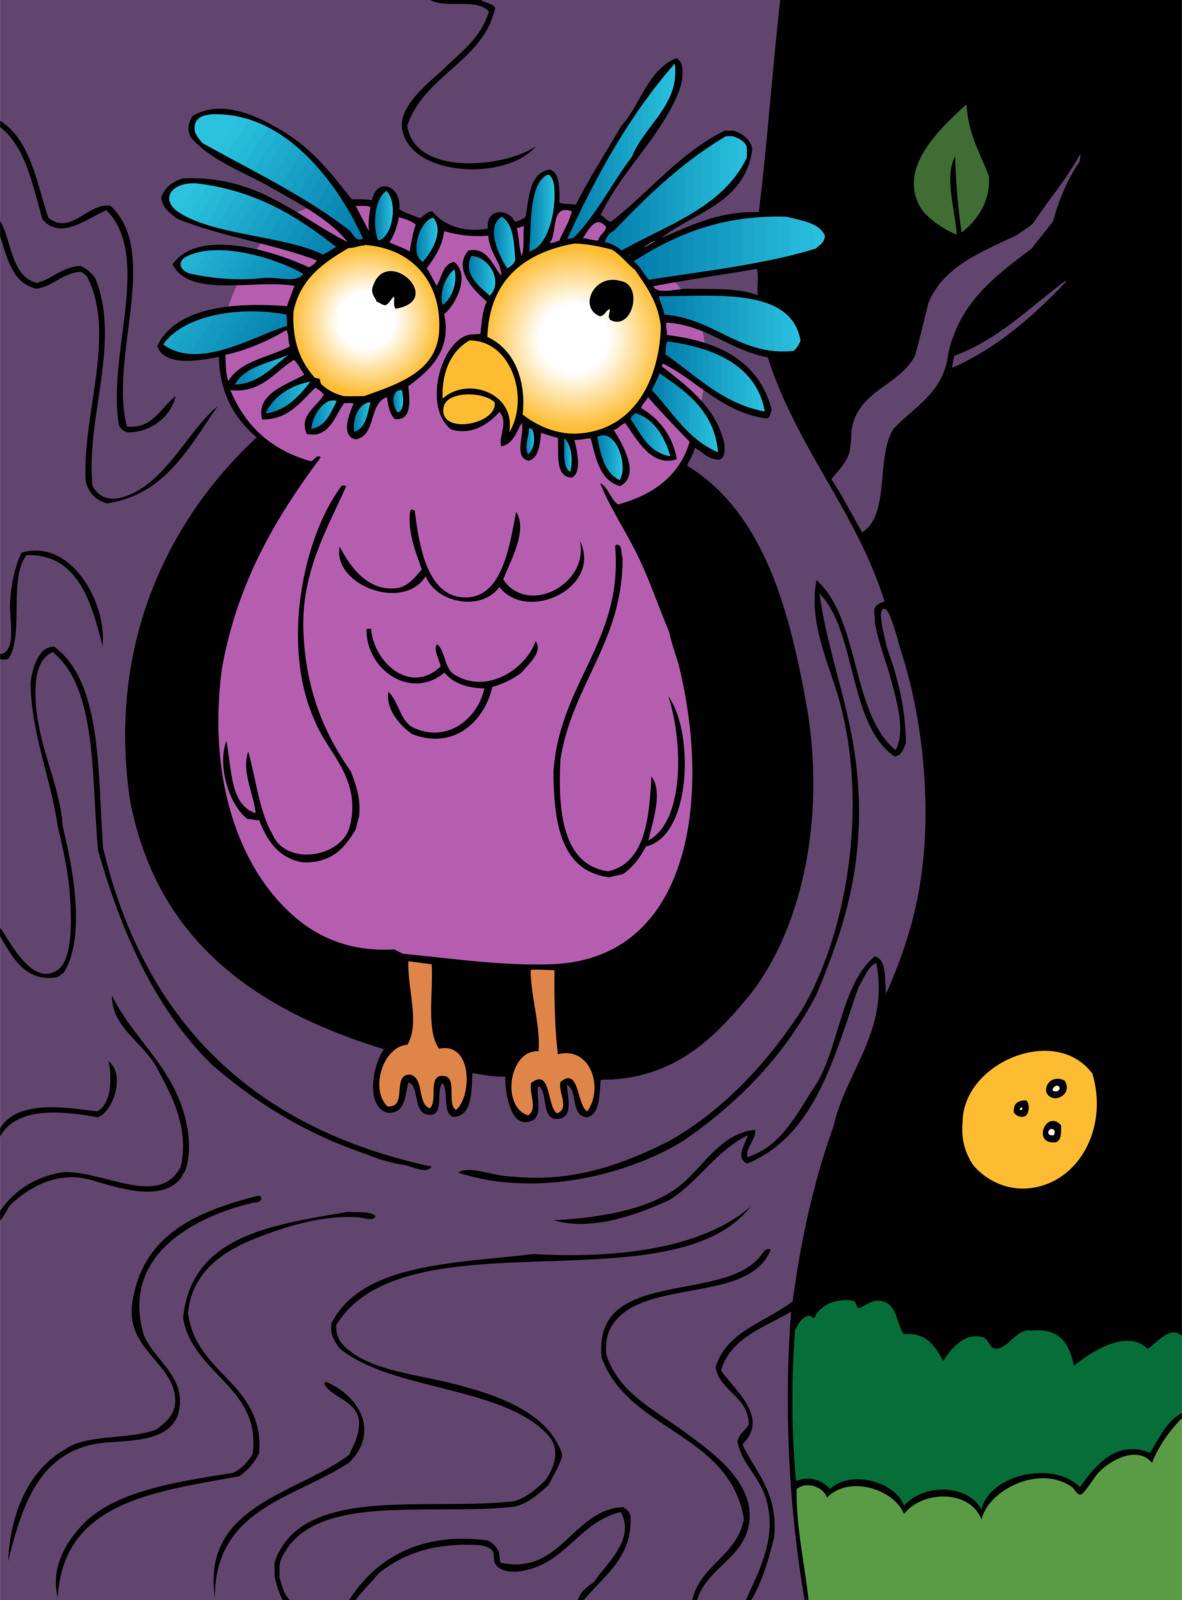 Cartoon owl on a full moon night.